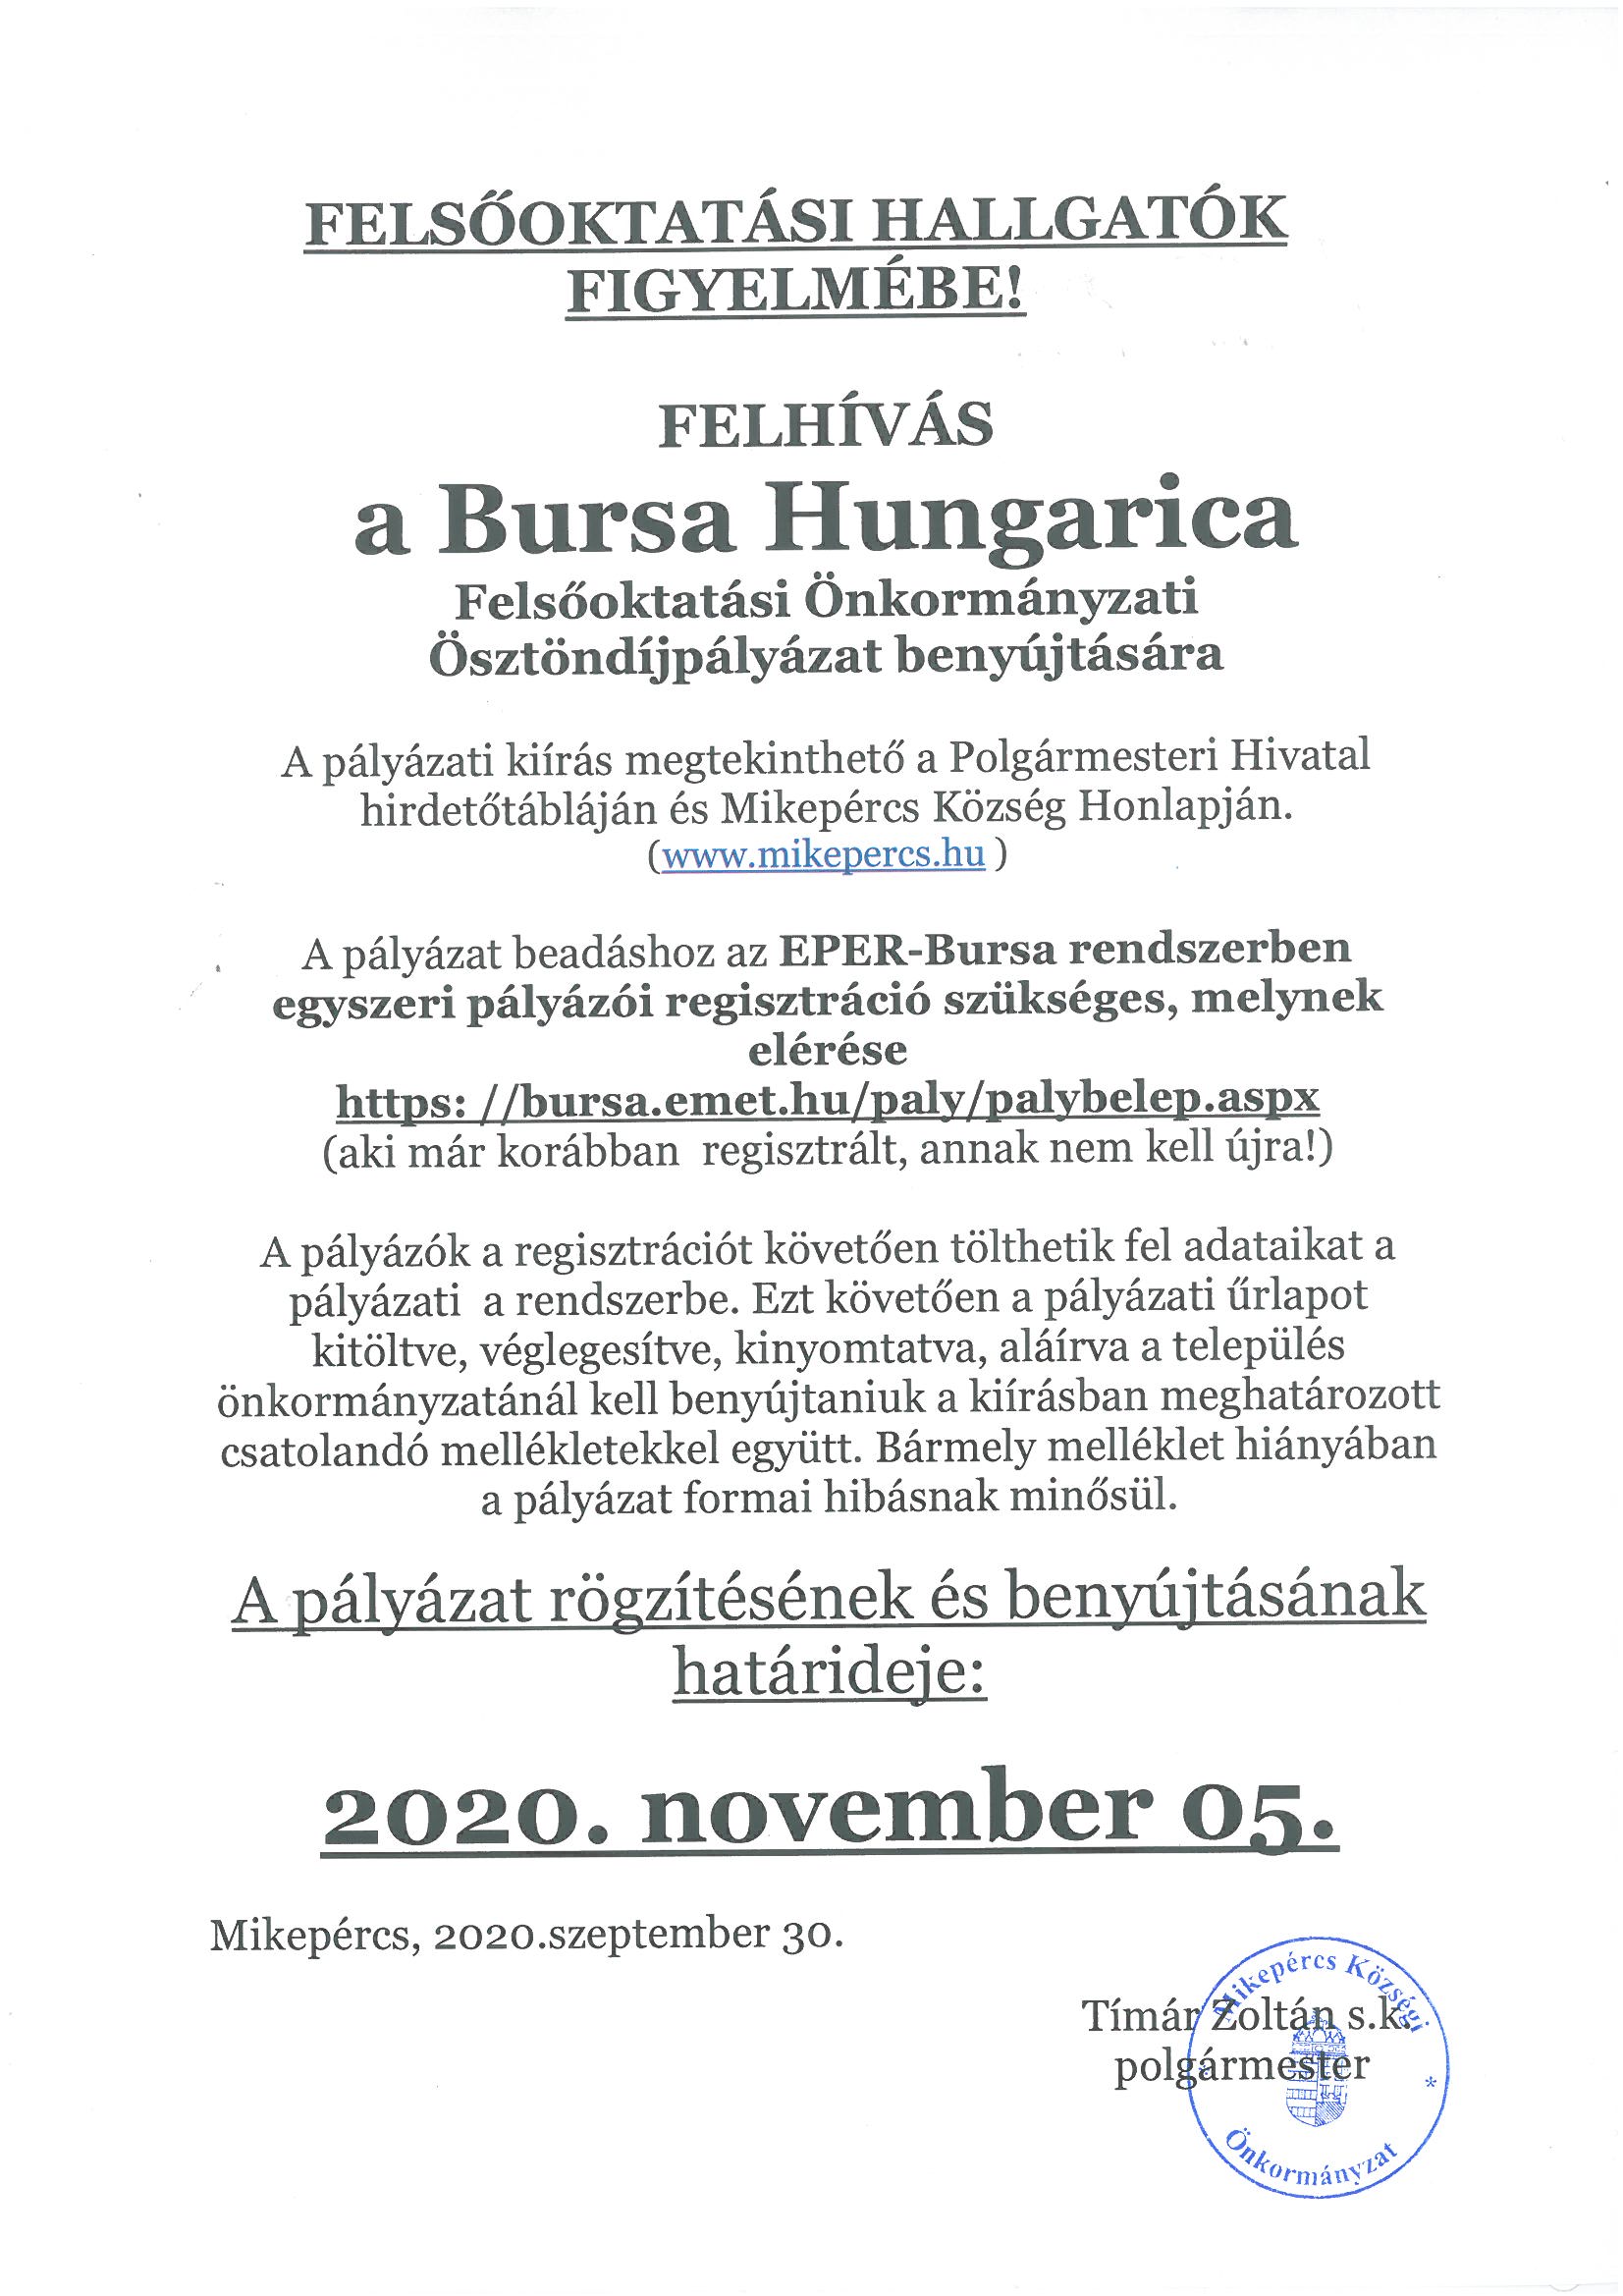 BURSA HUNGARICA FELSŐOKTATÁSI ÖNKORMÁNYZATI ÖSZTÖNDÍJPÁLYÁZAT 2020